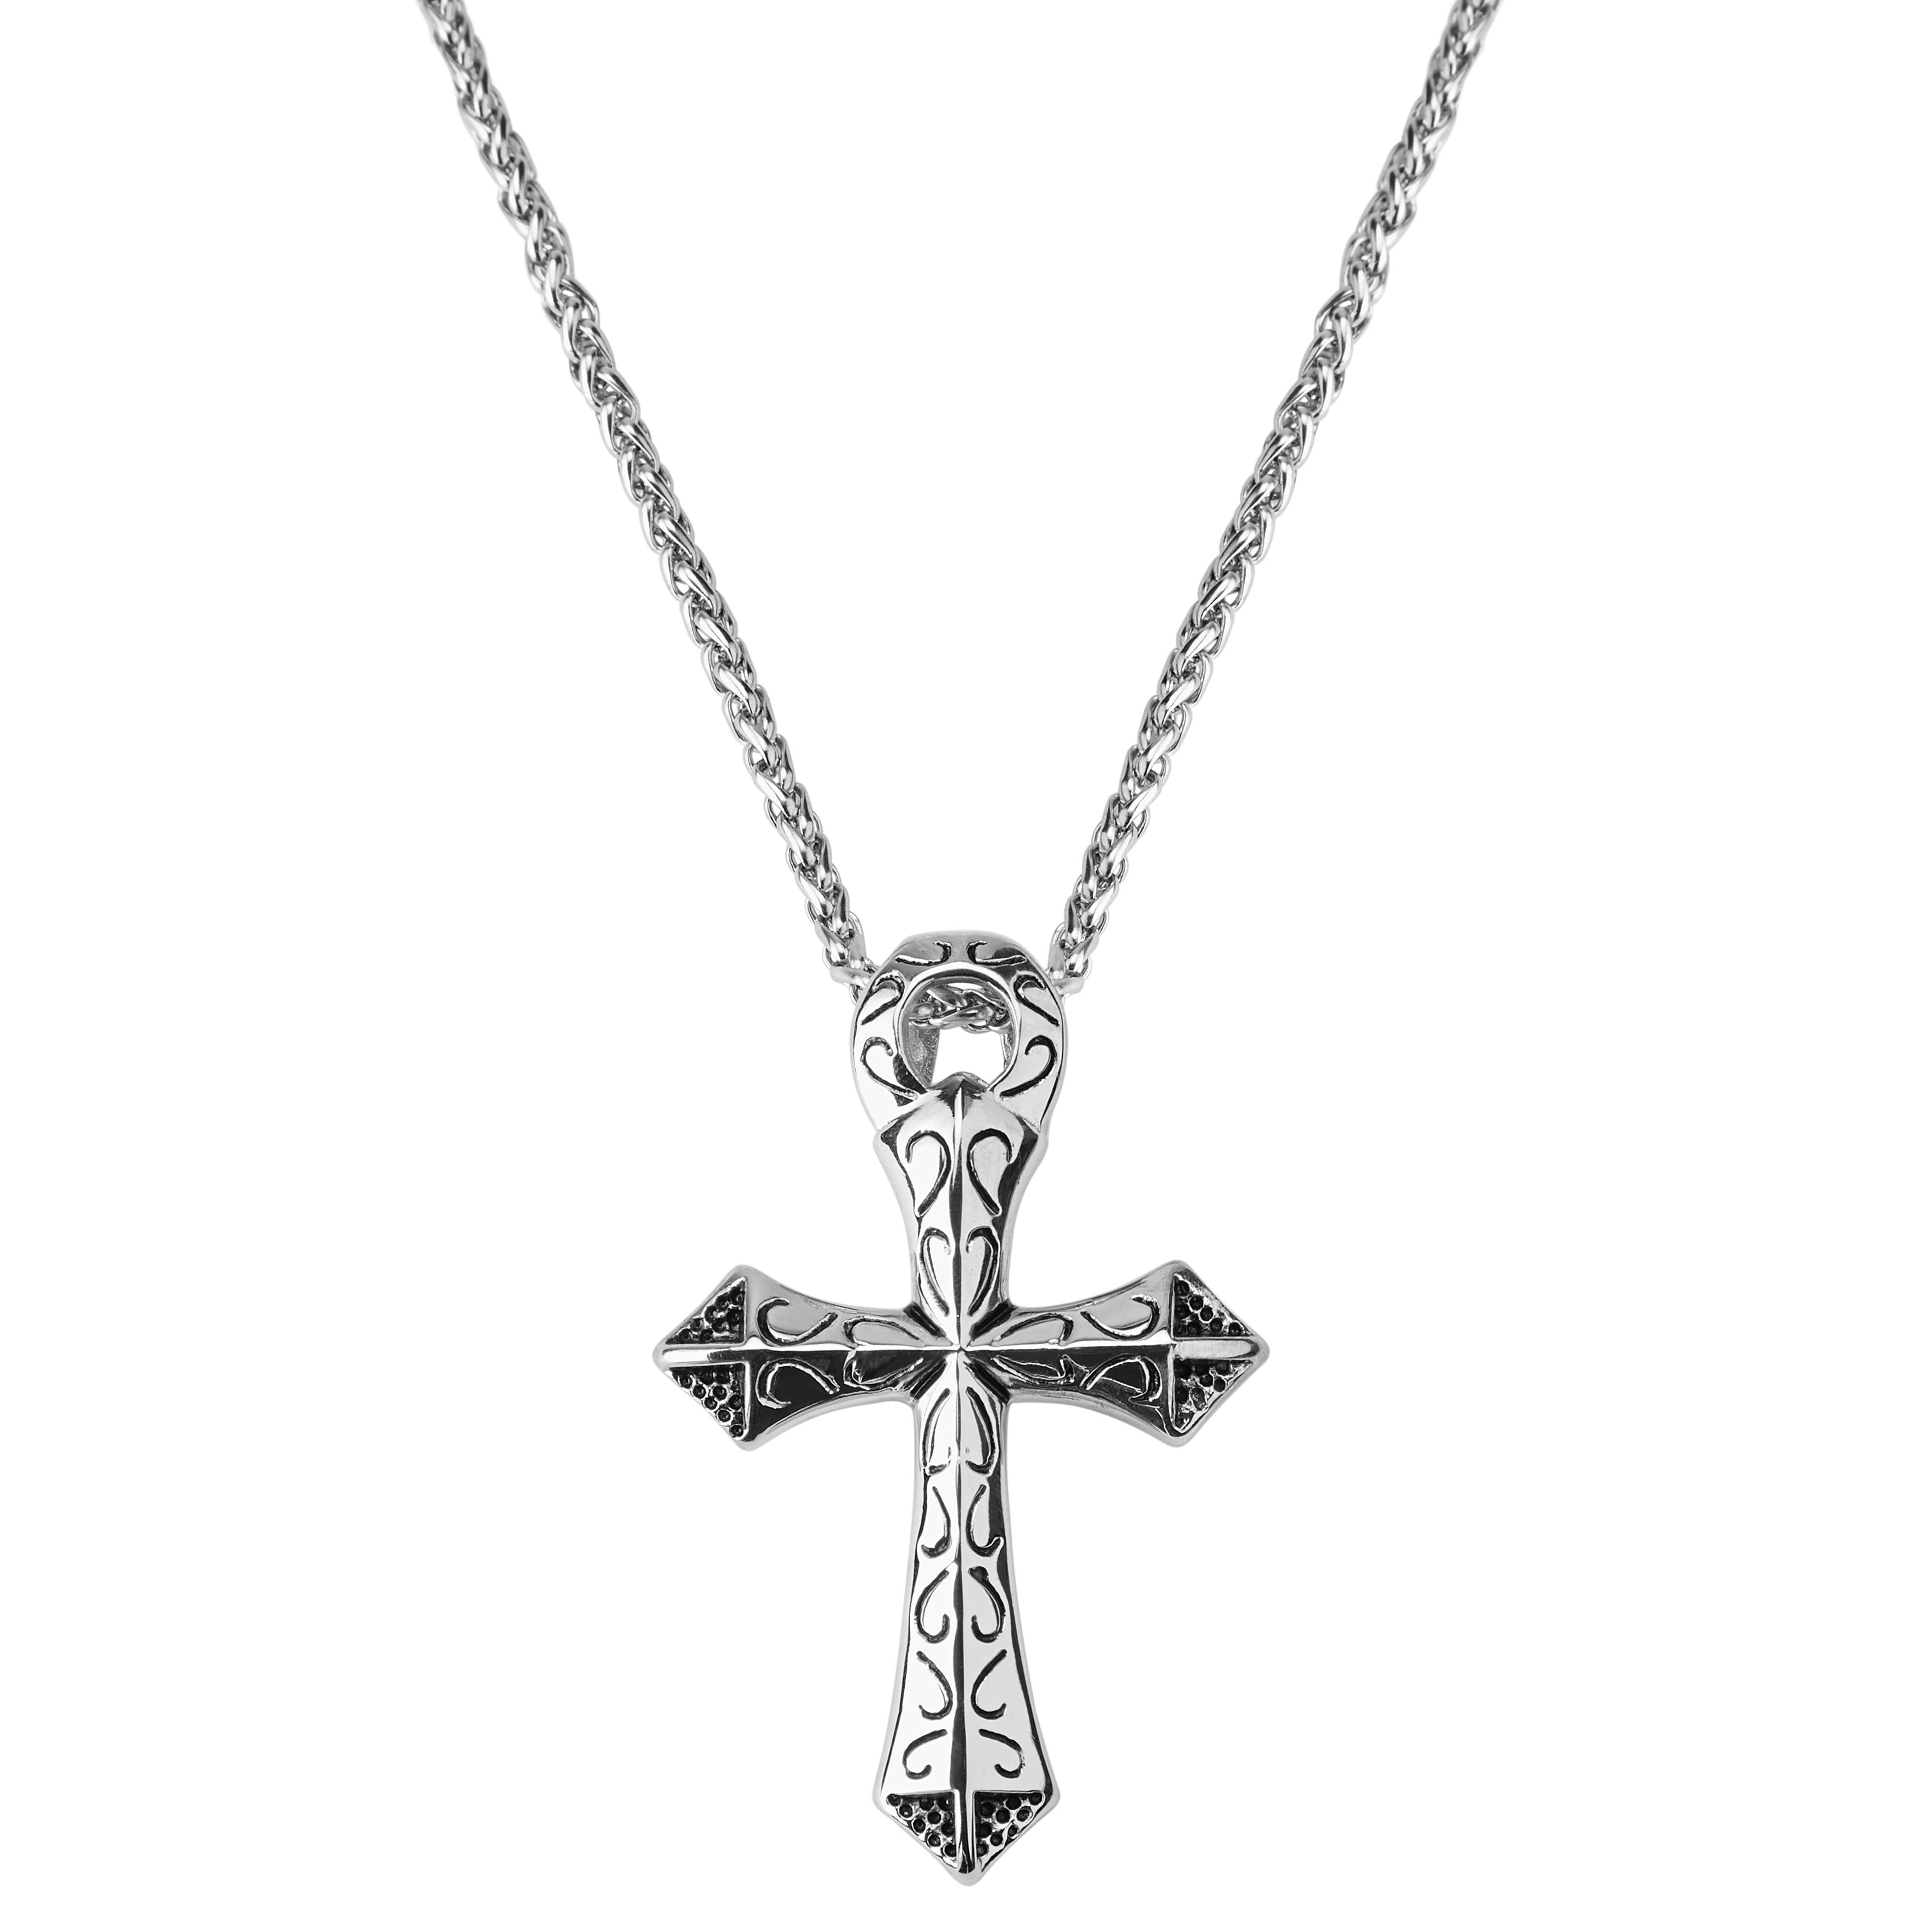 Collana con croce dei crociati